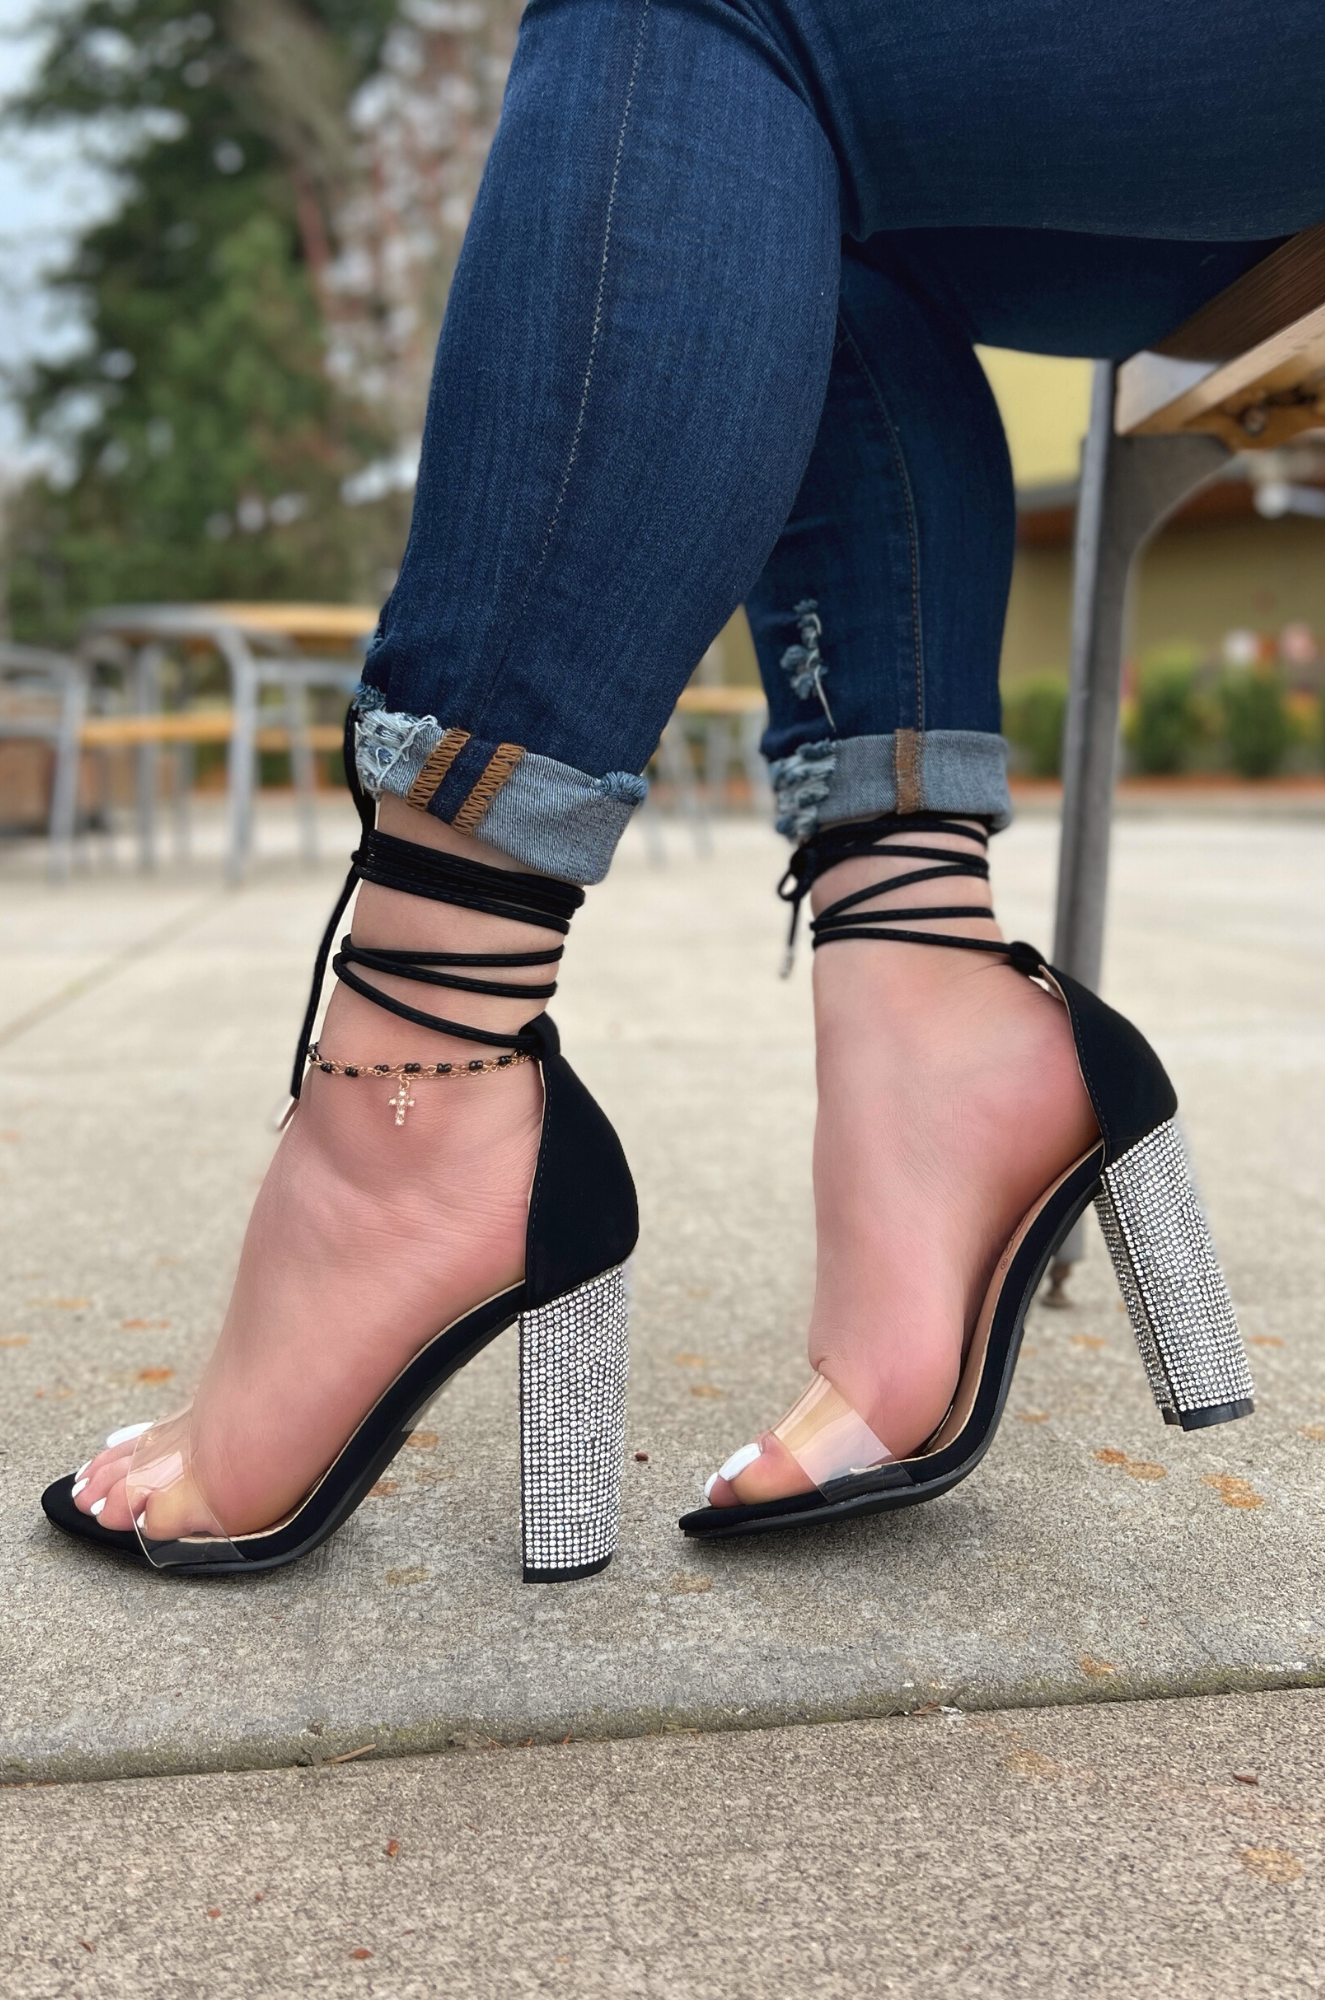 Black Glitter Low Heeled Sandals. Shoes | Low heels, Heels, Low heel sandals